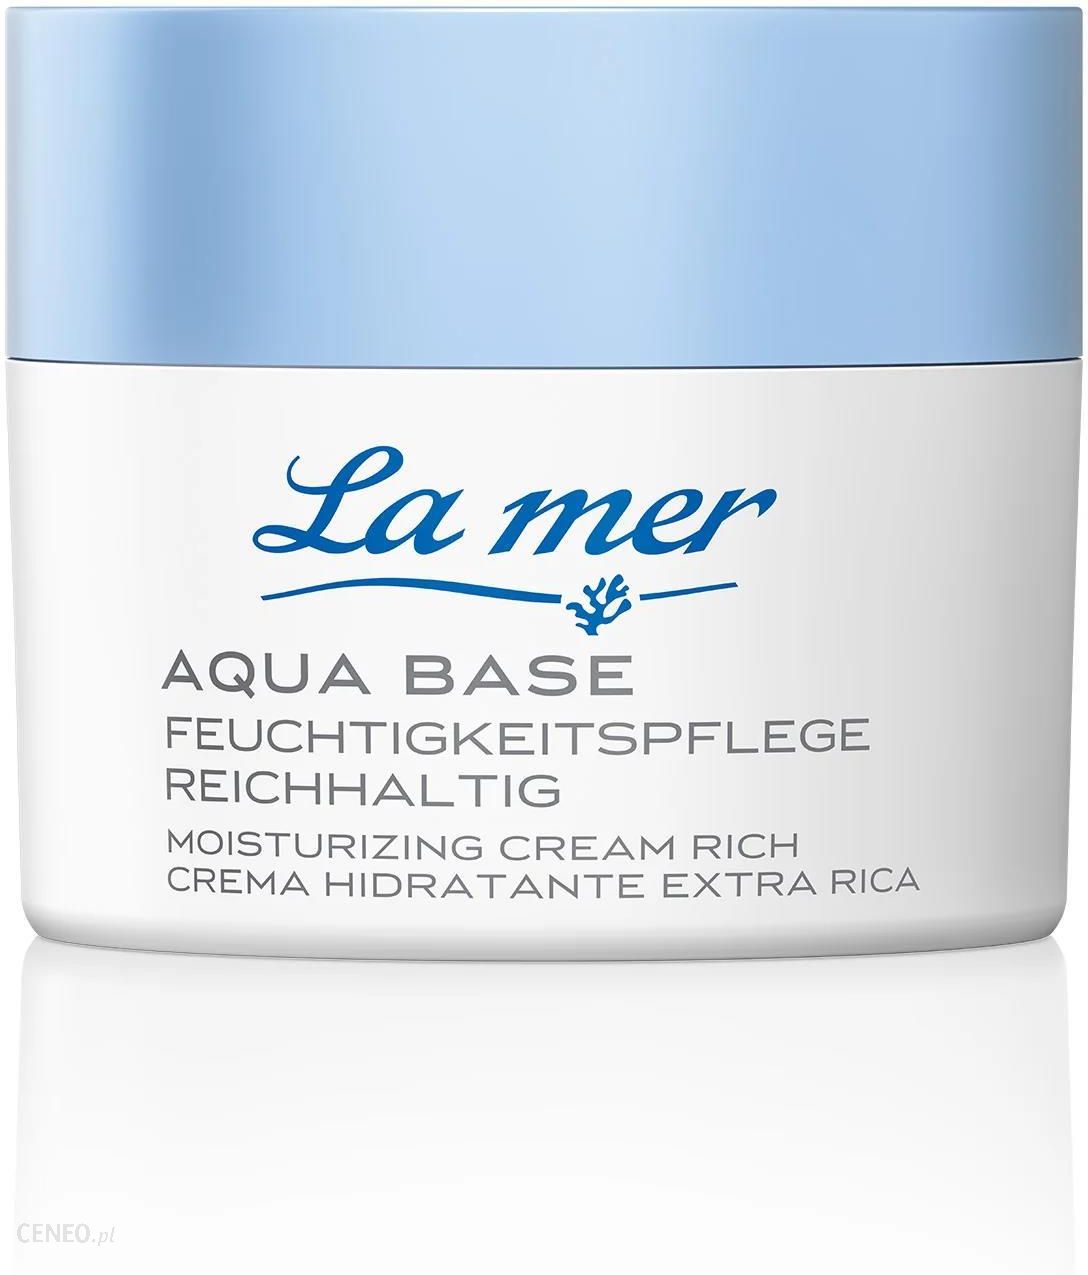 Parfum ceny - Aqua twarzy do Reichhaltig na La ohne Base Opinie mer Feuchtigkeitscreme i Krem 50ml,